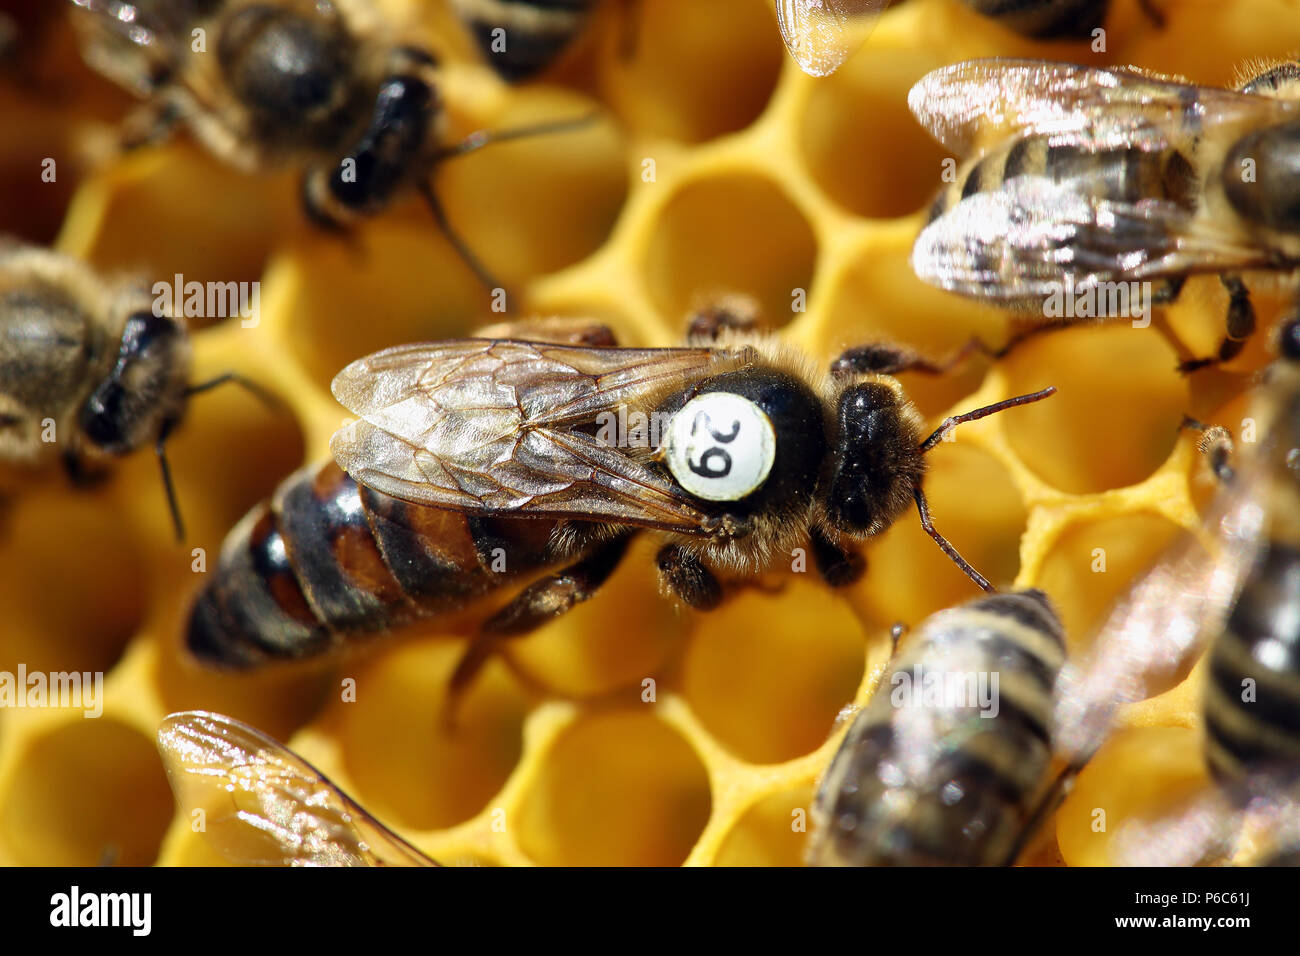 Berlin, Alemania - abeja reina con slip blanco marca en un panal de miel Foto de stock